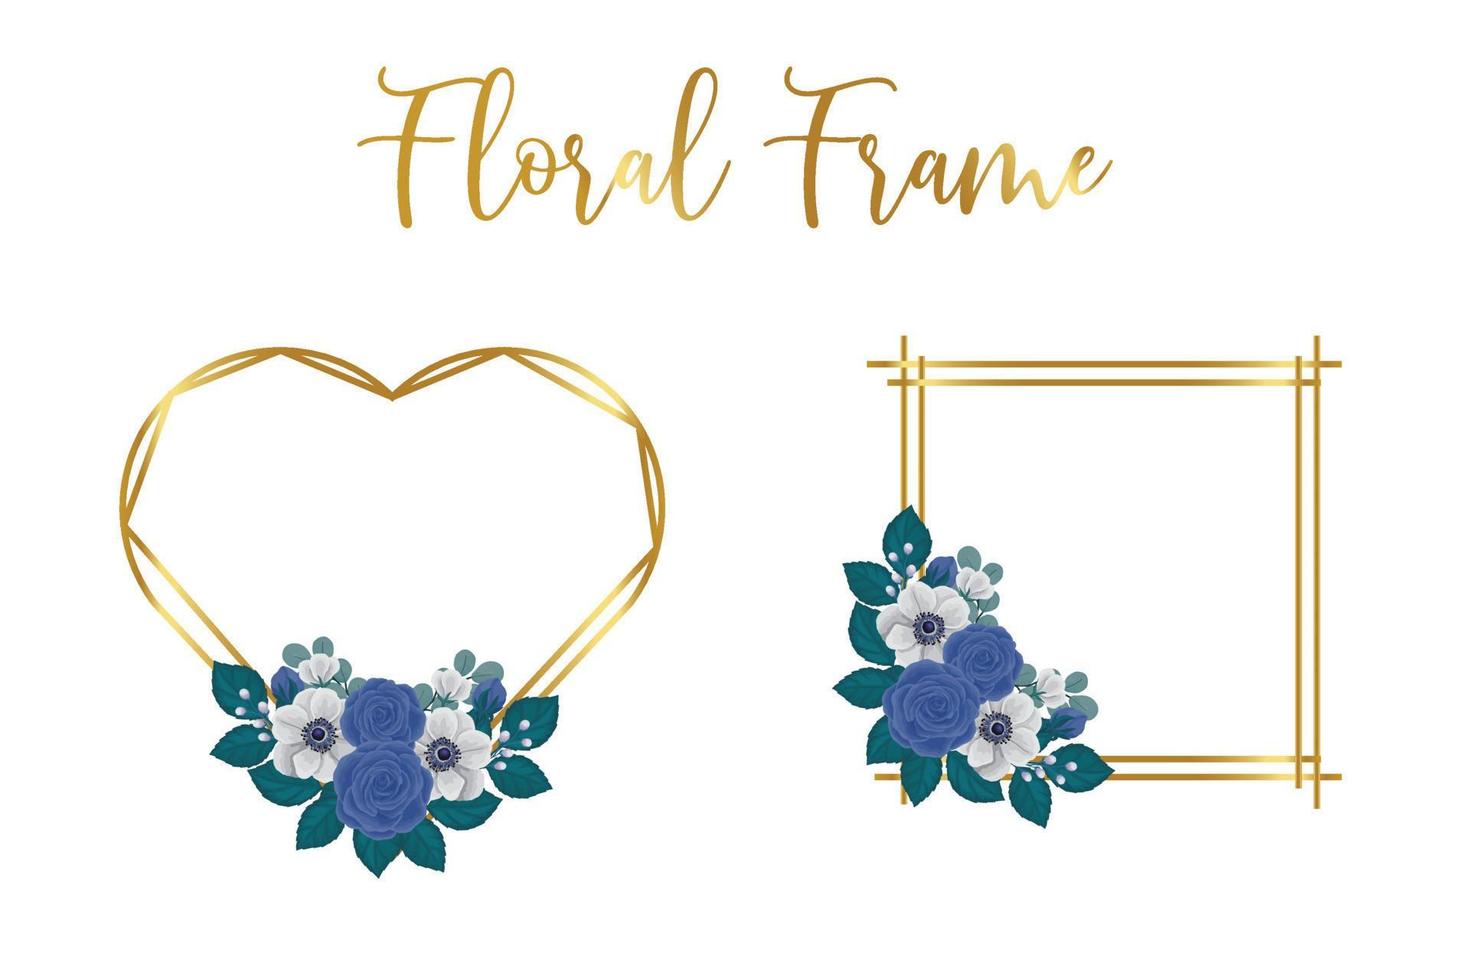 Blumen- Rahmen Blau Rose Blume Design Vorlage, Digital Aquarell Hand gezeichnet vektor